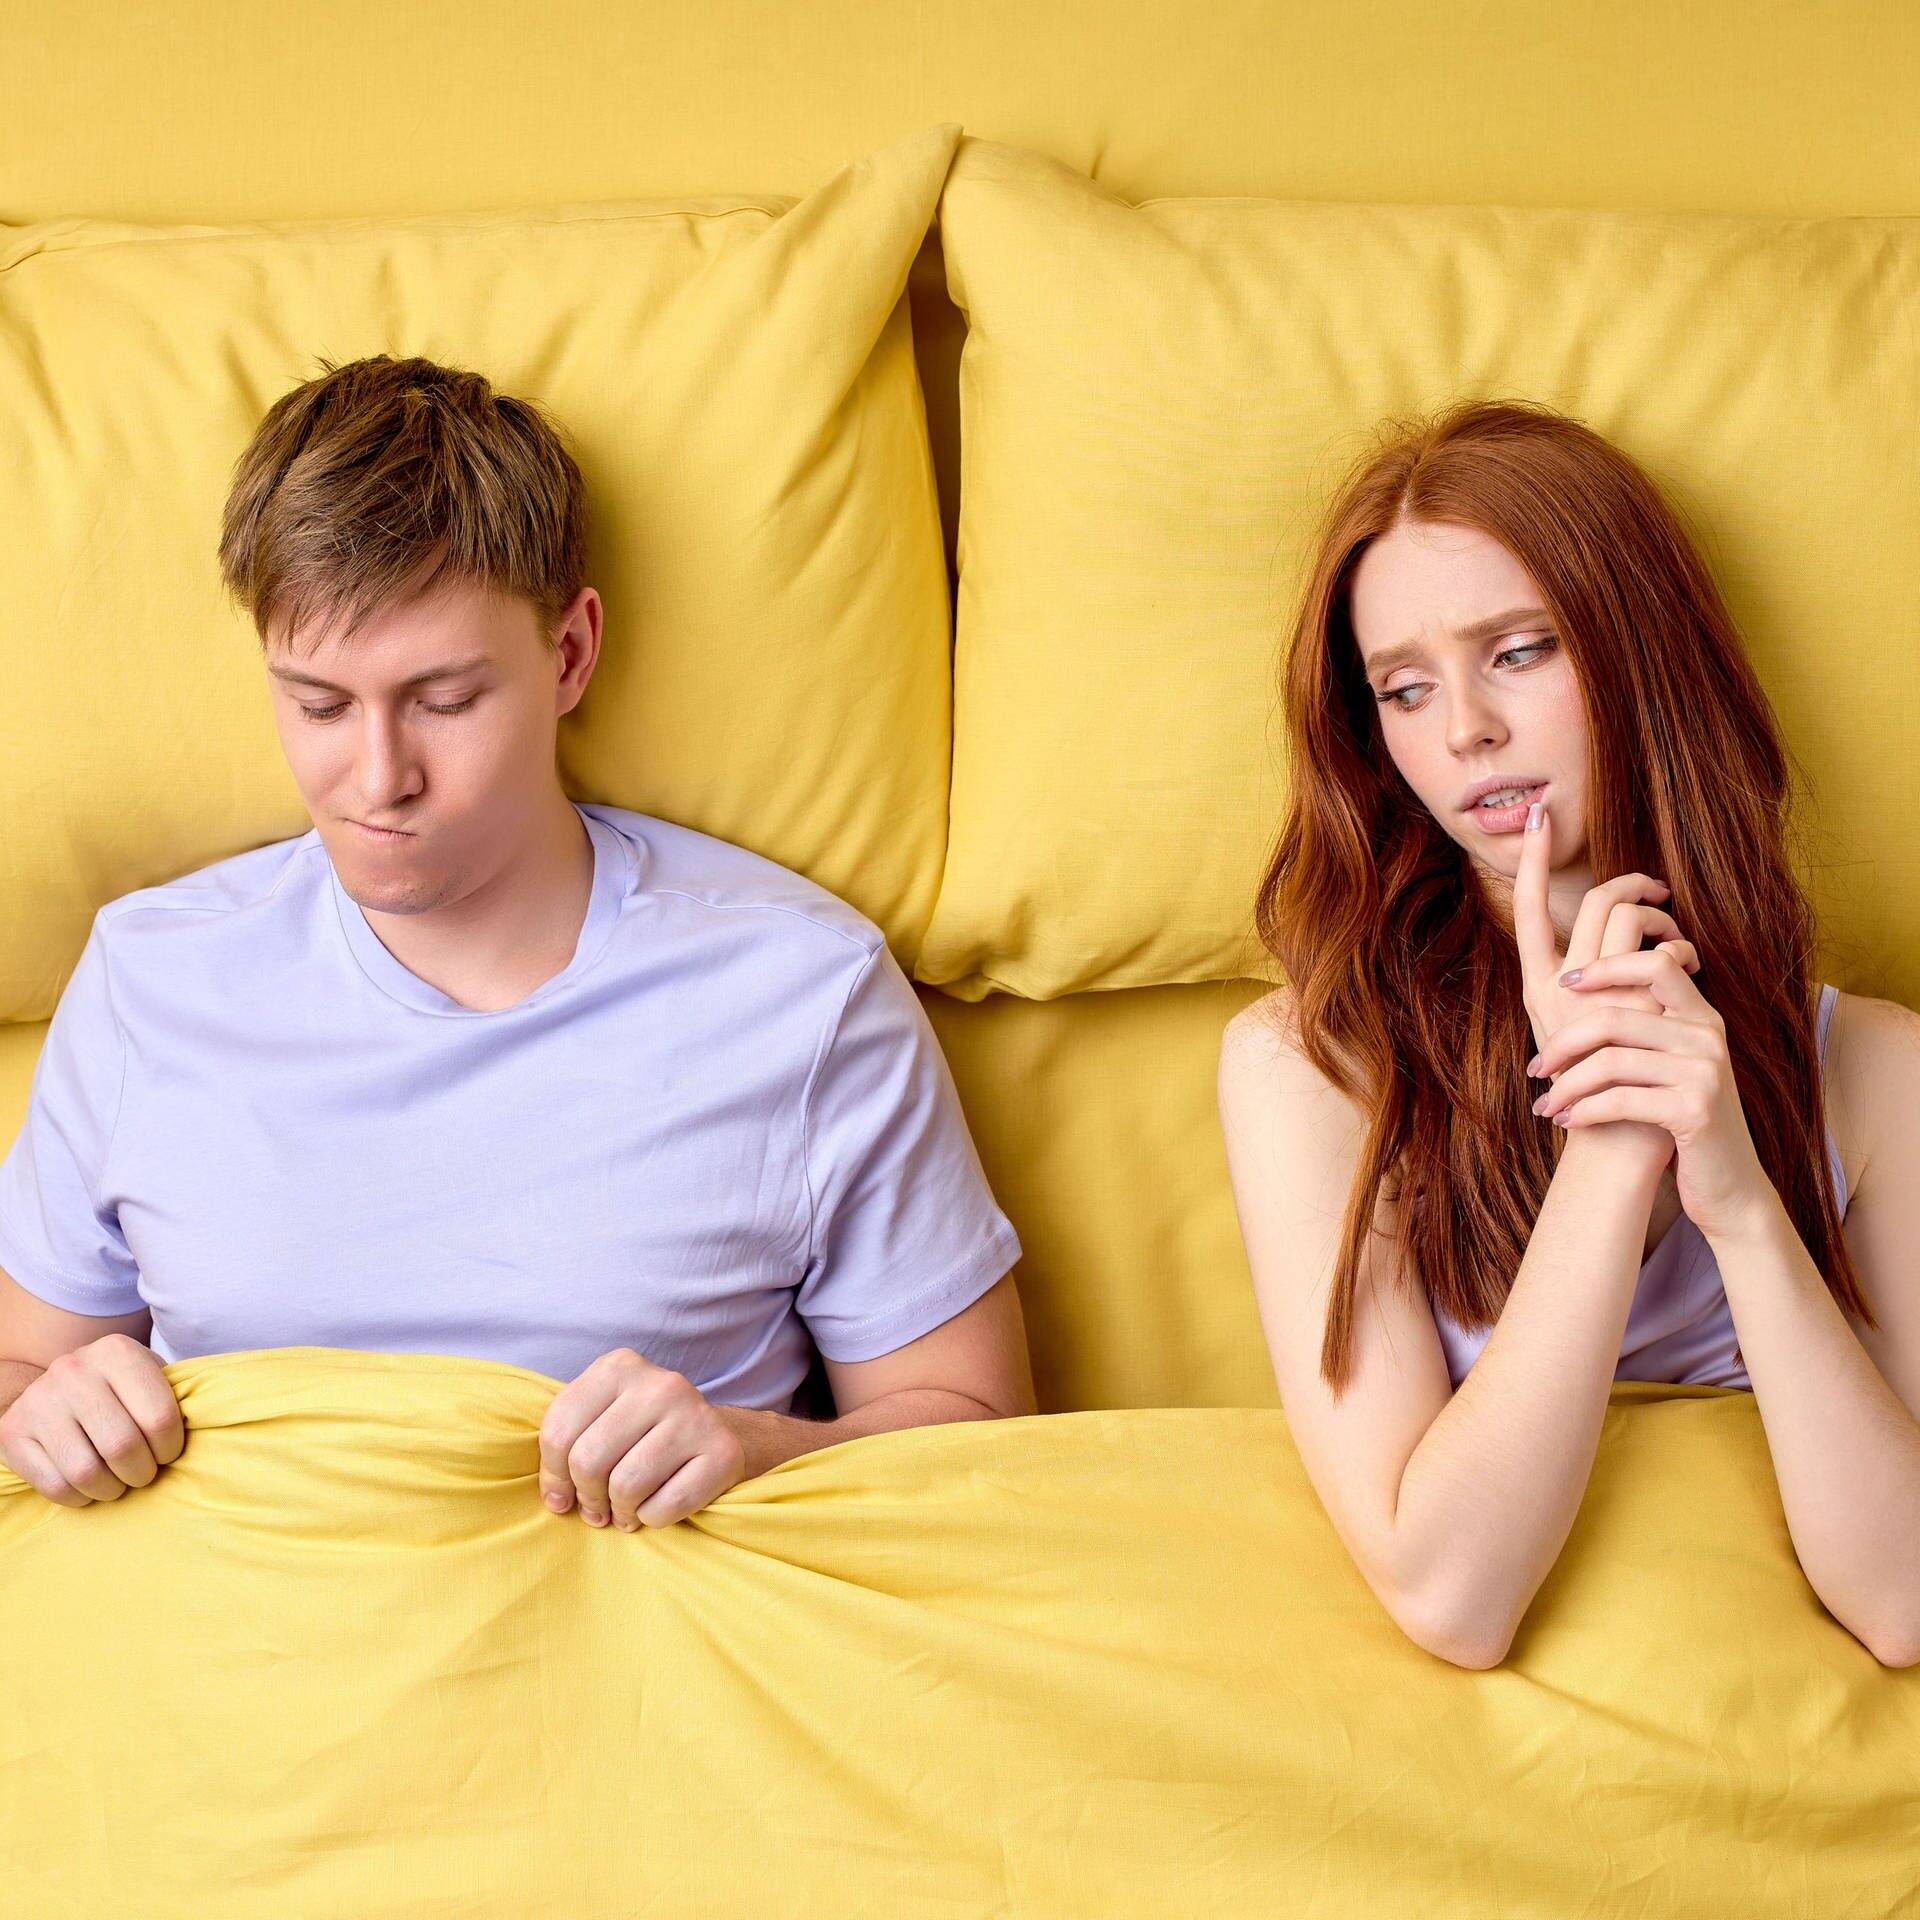 Junges Paar liegt im Bett. Sie schaut skeptisch zu ihm rüber, er ist verunsichert, weil er keine Lust hat auf Sex. (Foto: Afobe Stock/Roman)